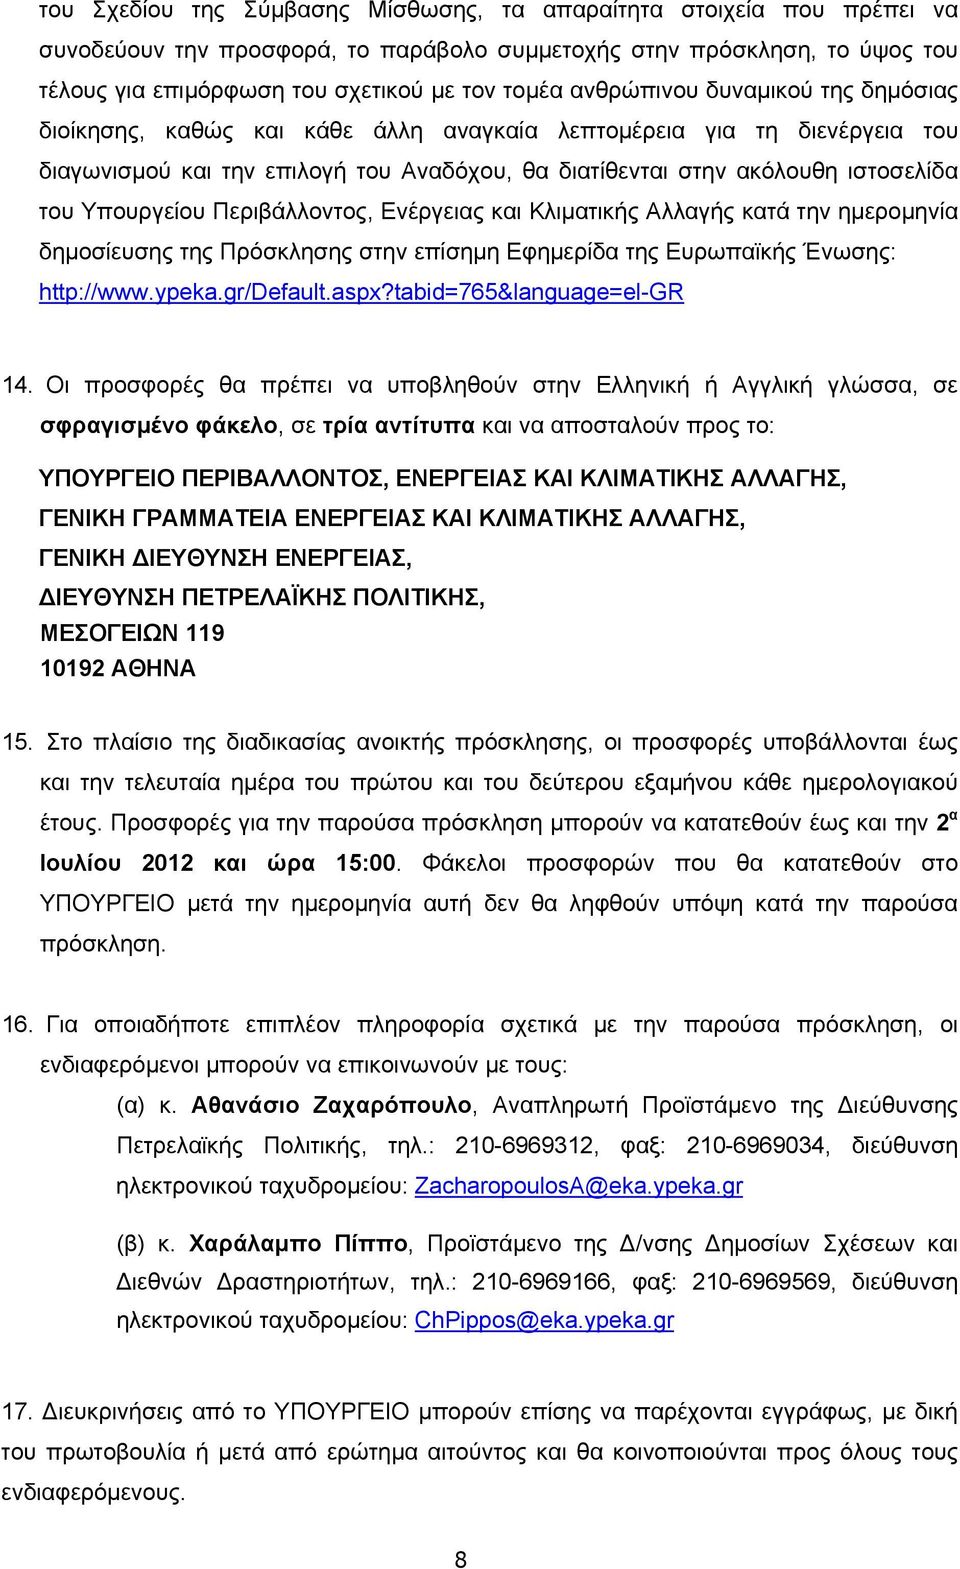 Υπουργείου Περιβάλλοντος, Ενέργειας και Κλιματικής Αλλαγής κατά την ημερομηνία δημοσίευσης της Πρόσκλησης στην επίσημη Εφημερίδα της Ευρωπαϊκής Ένωσης: http://www.ypeka.gr/default.aspx?